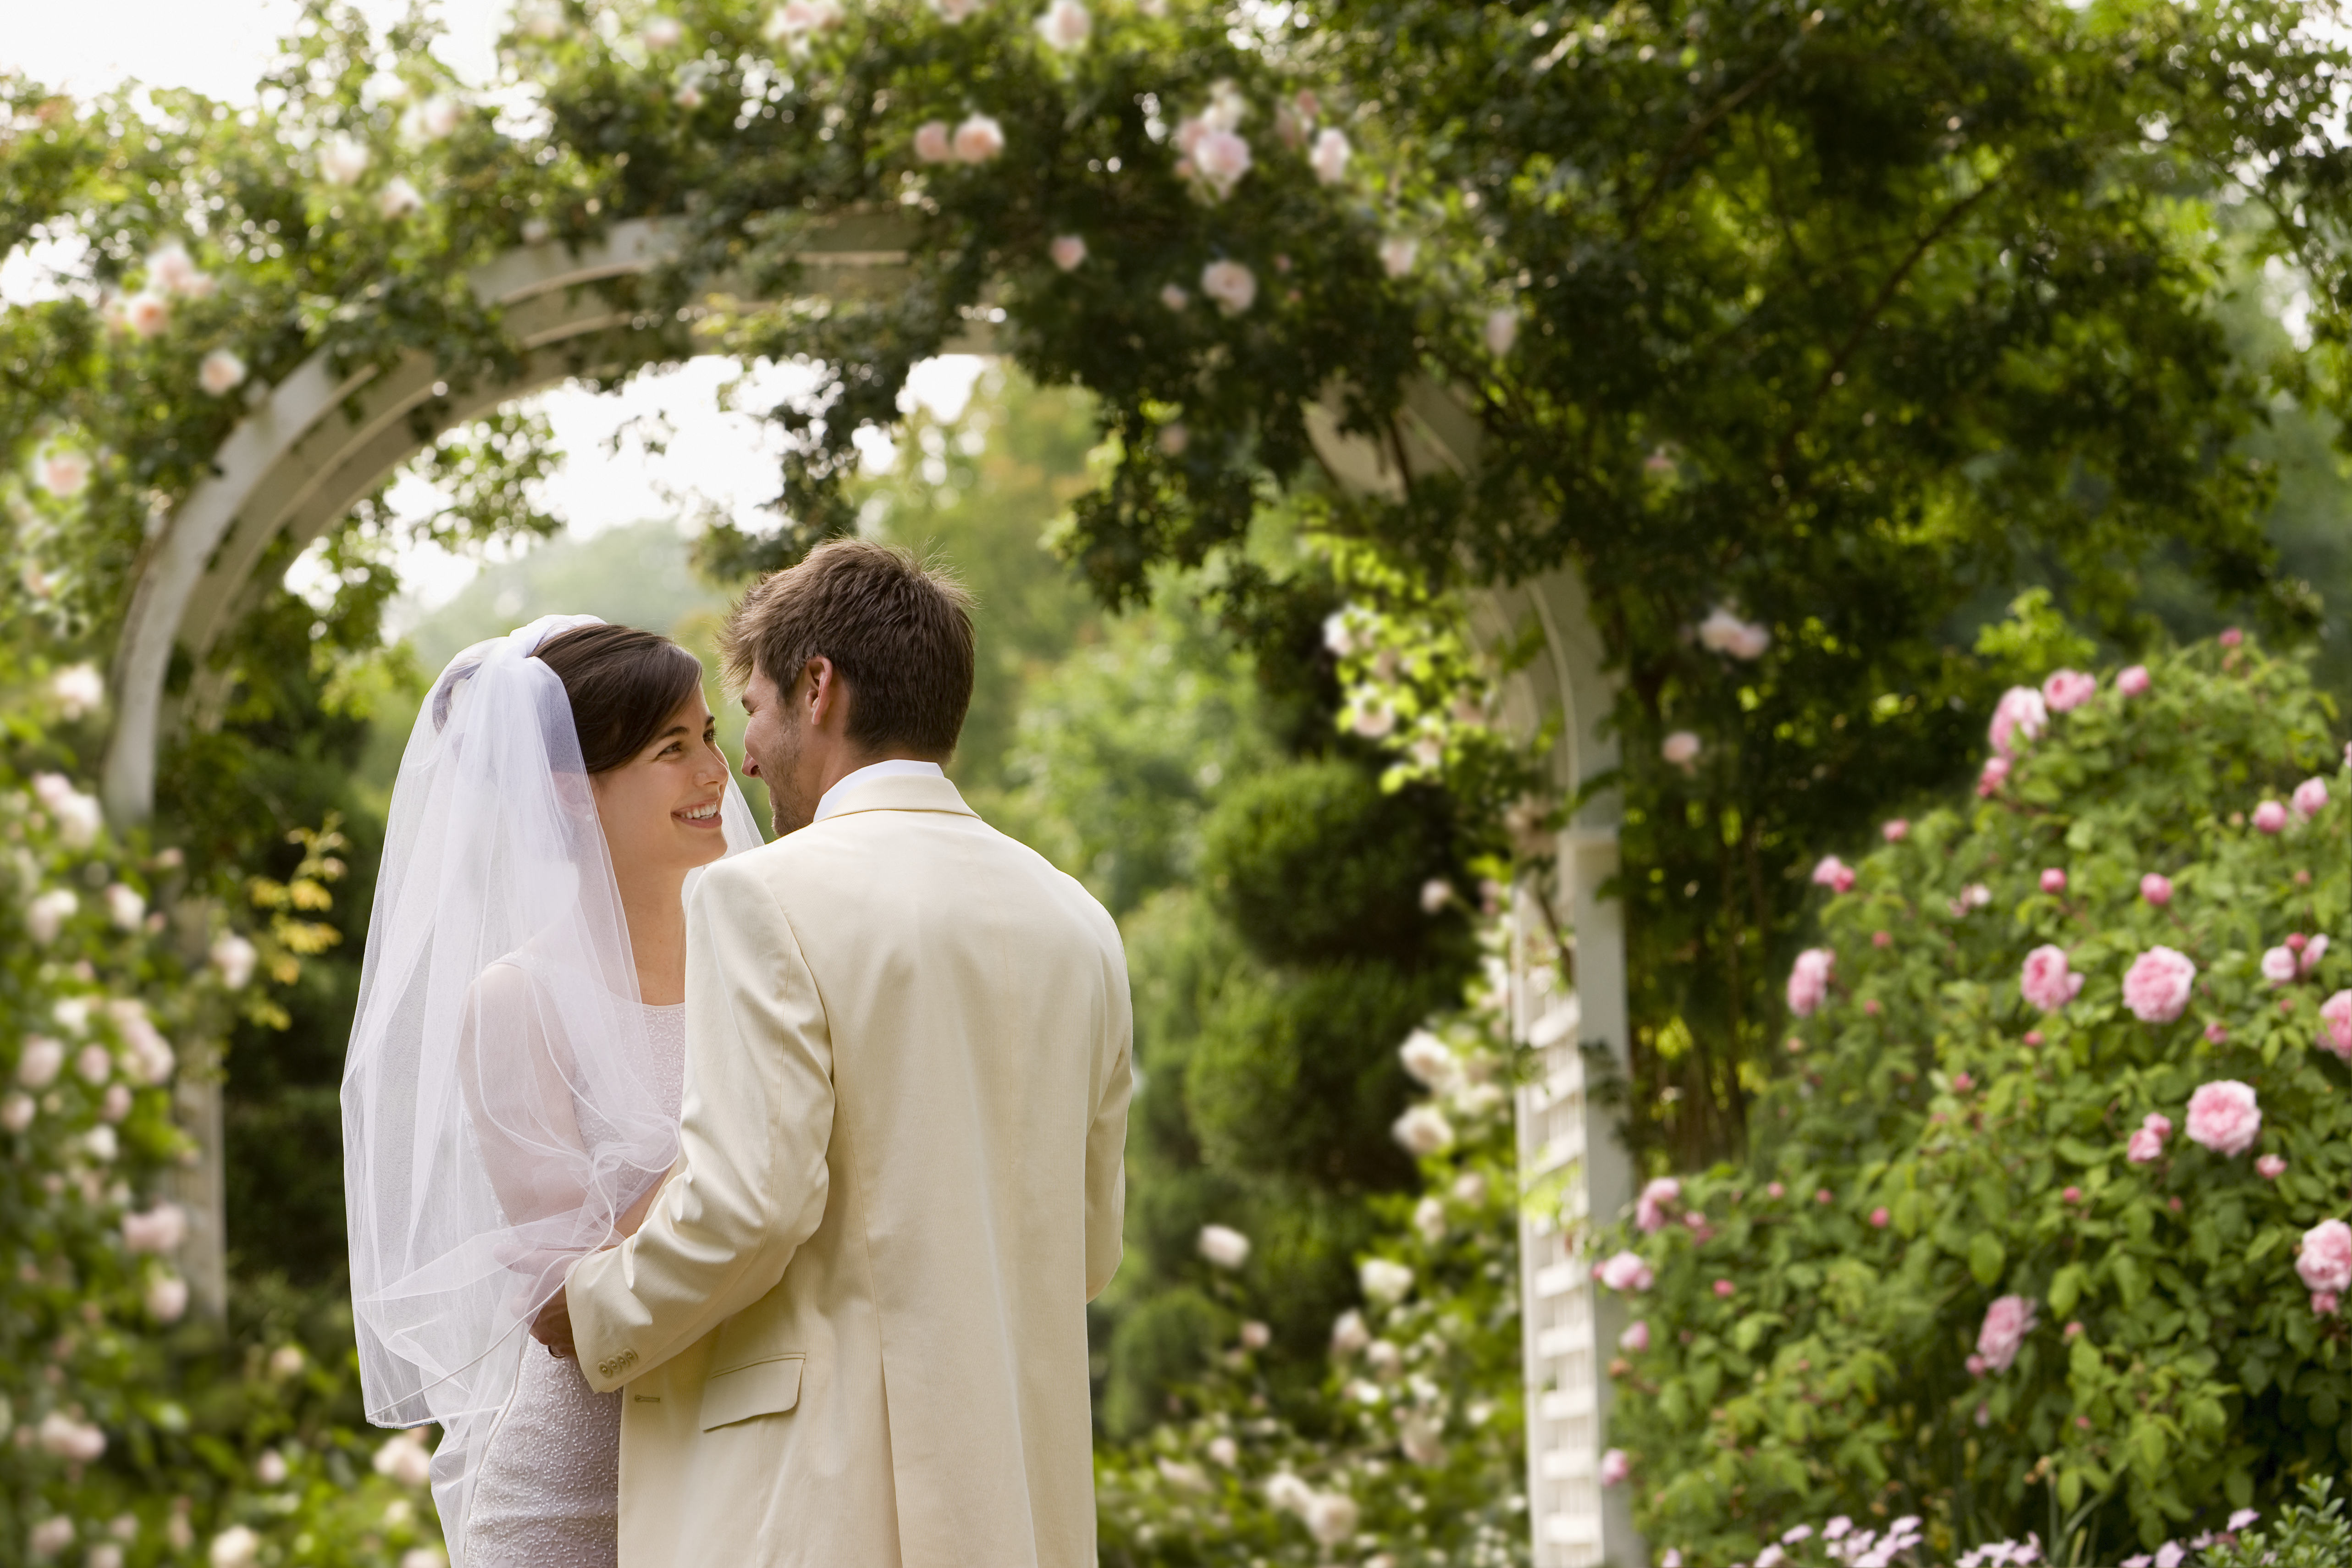 Un jeune couple se mariant dans un jardin | Source : Getty Images